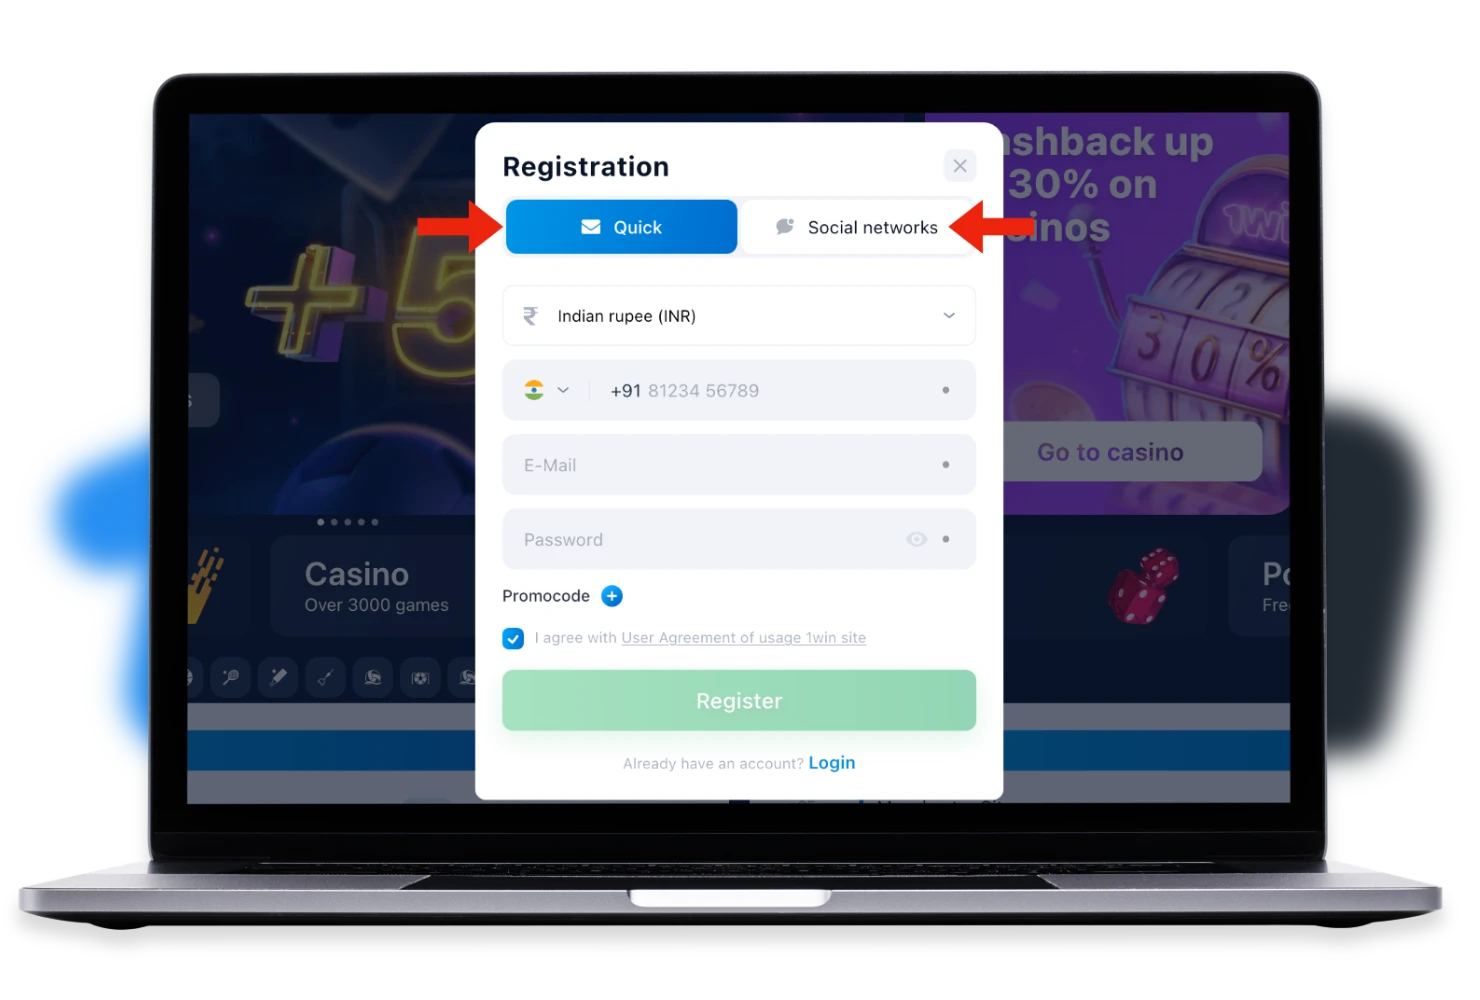 O usuário pode escolher entre várias opções para registro na plataforma 1win